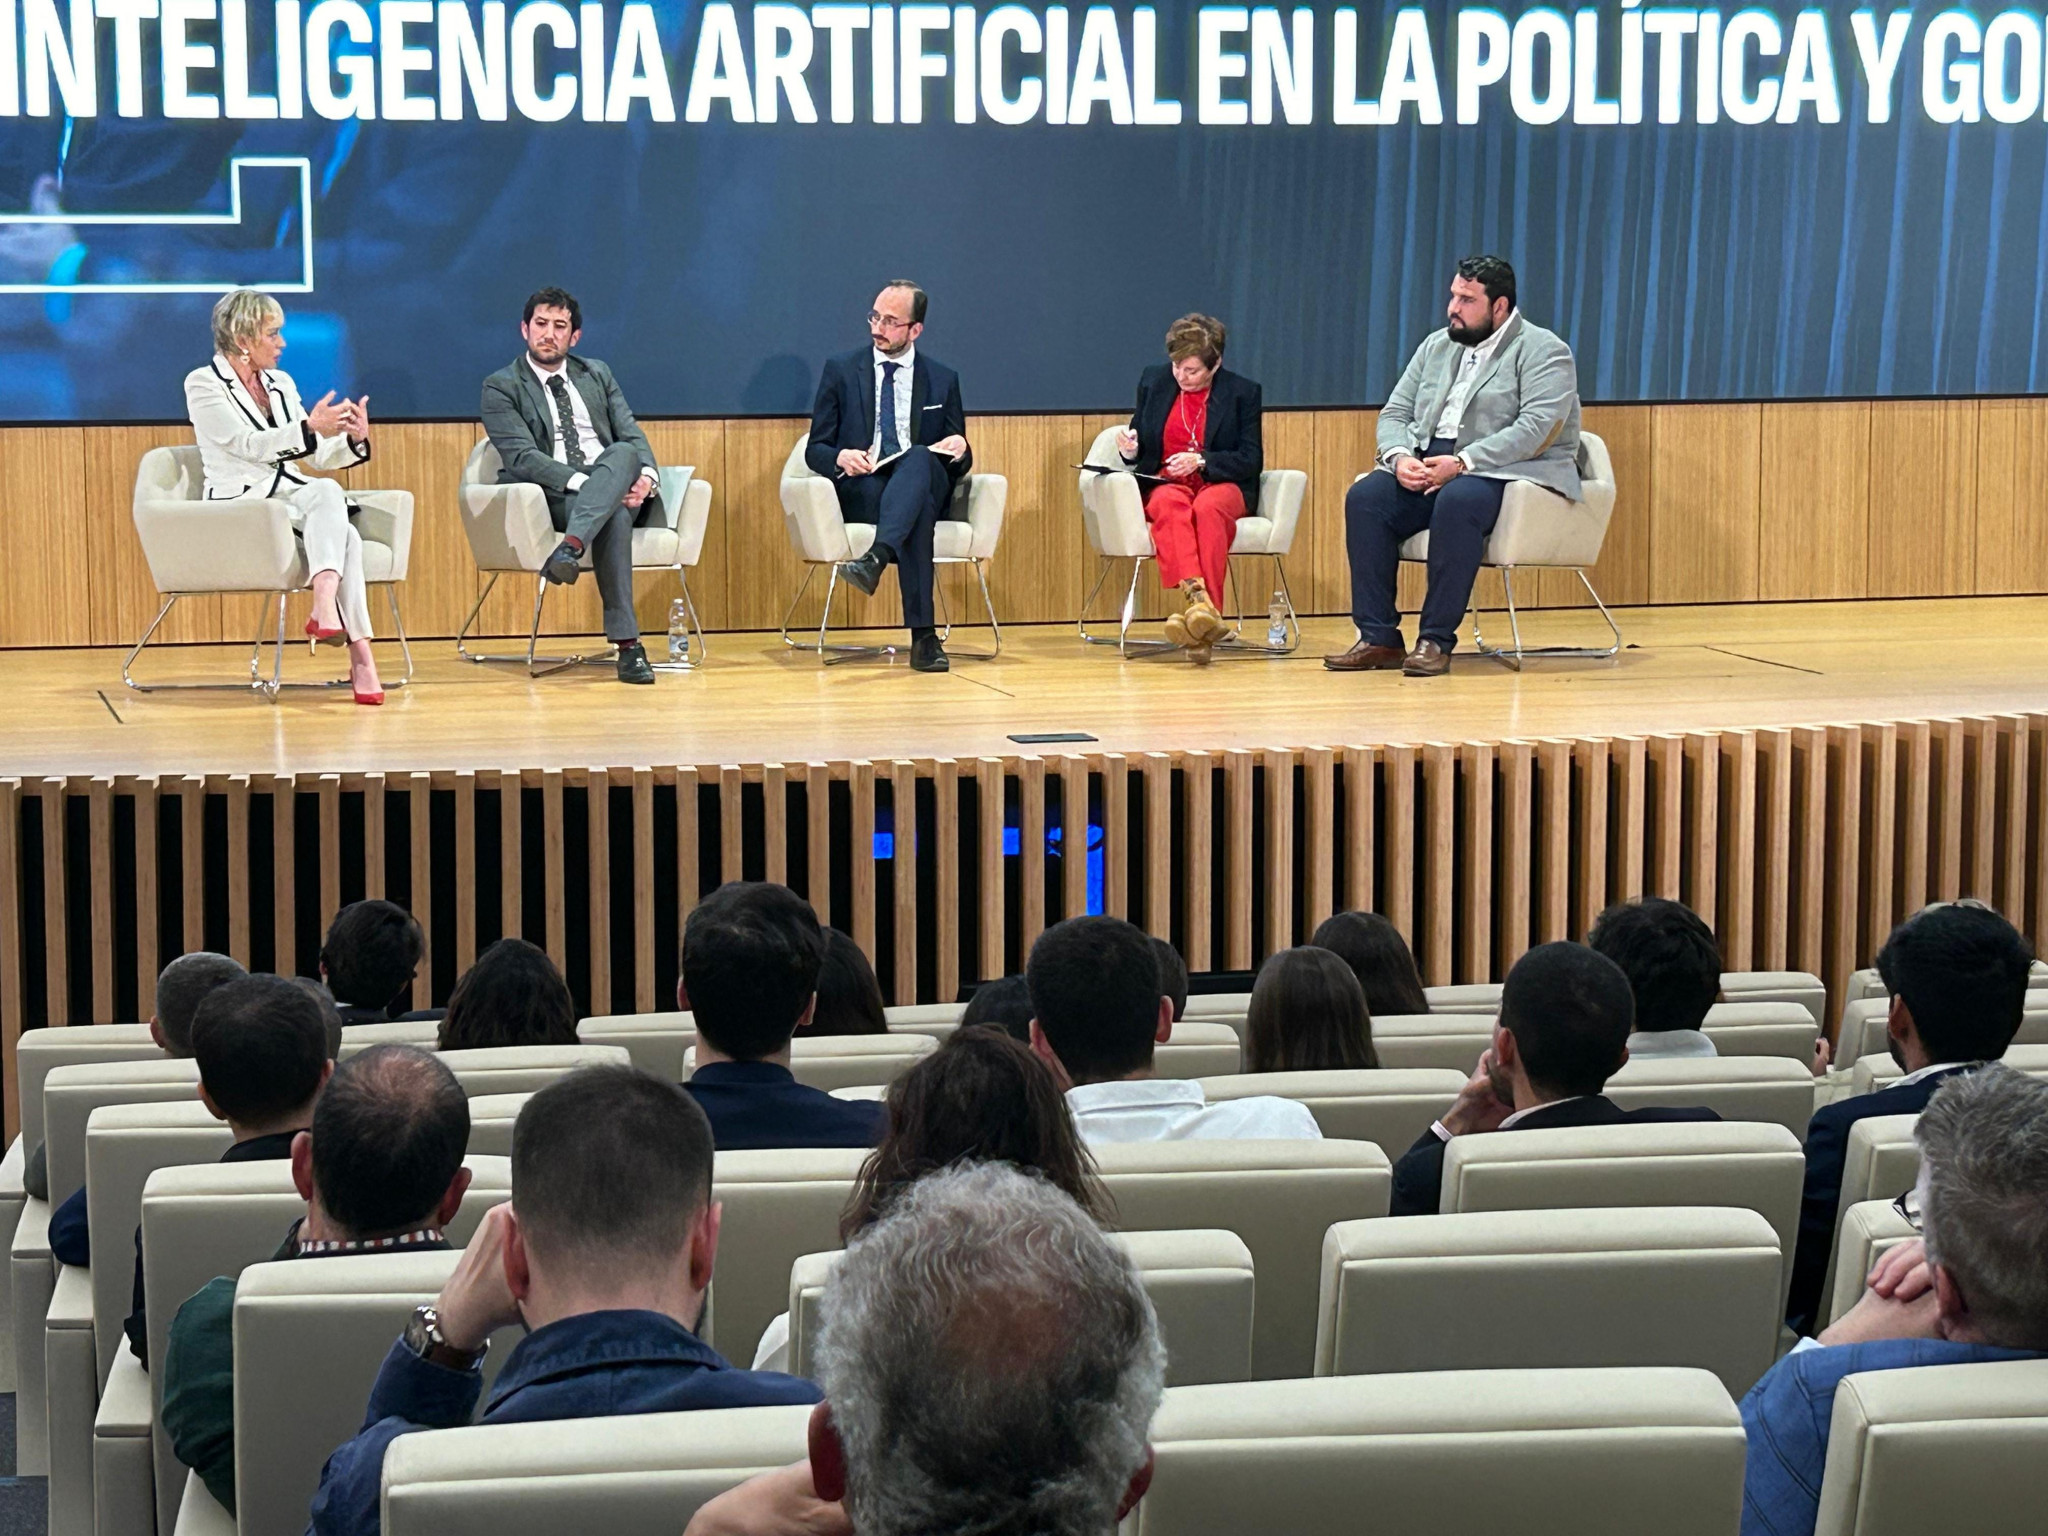 “El impacto de la inteligencia artificial en la Política y el Gobierno”